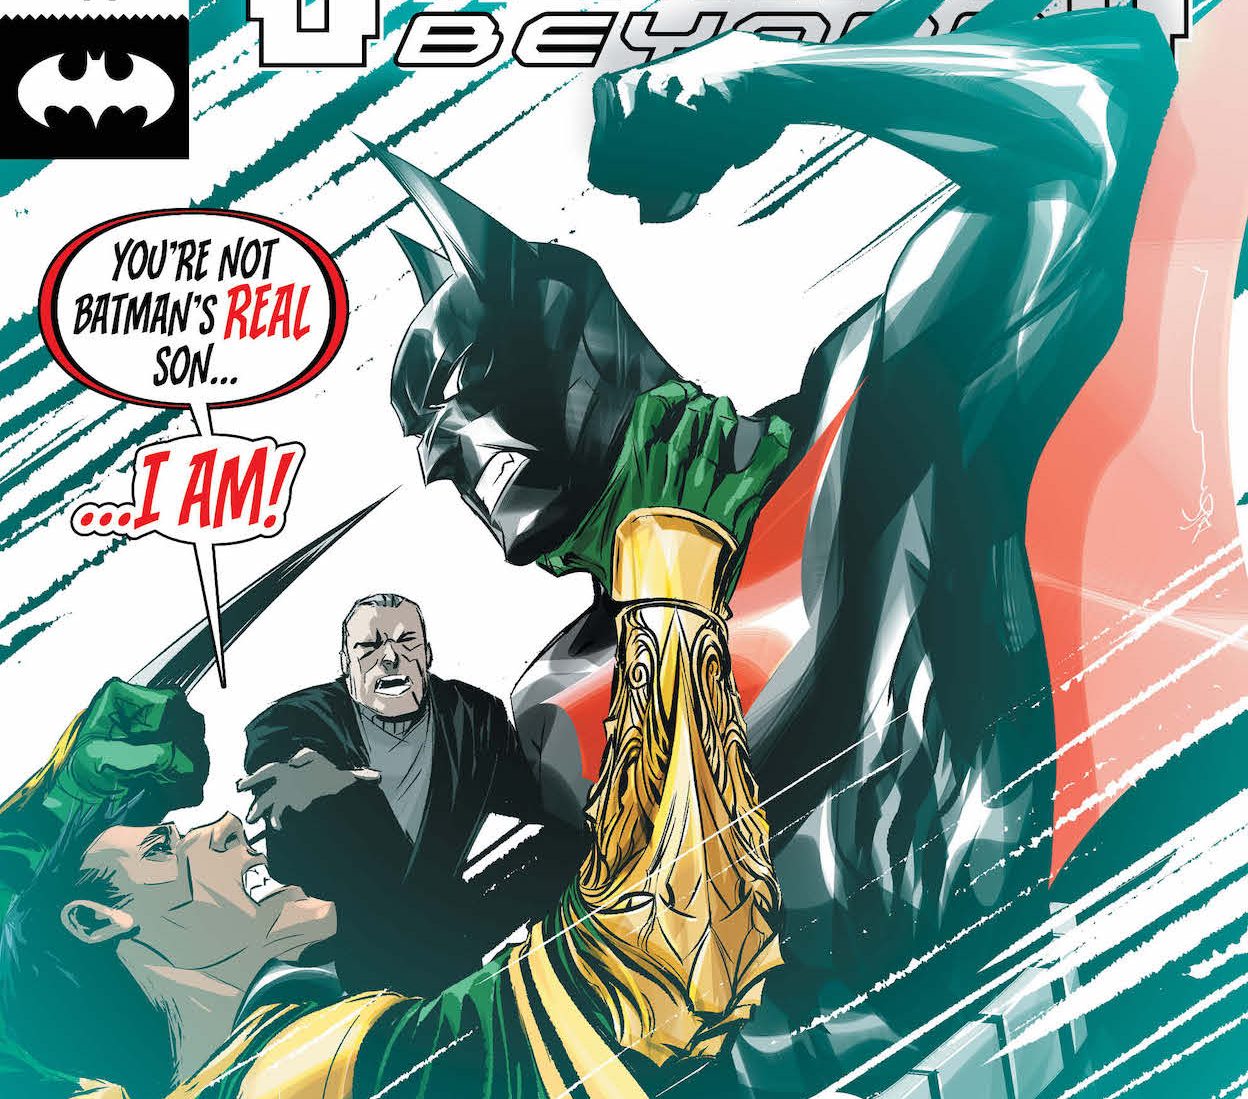 Batman Beyond #44